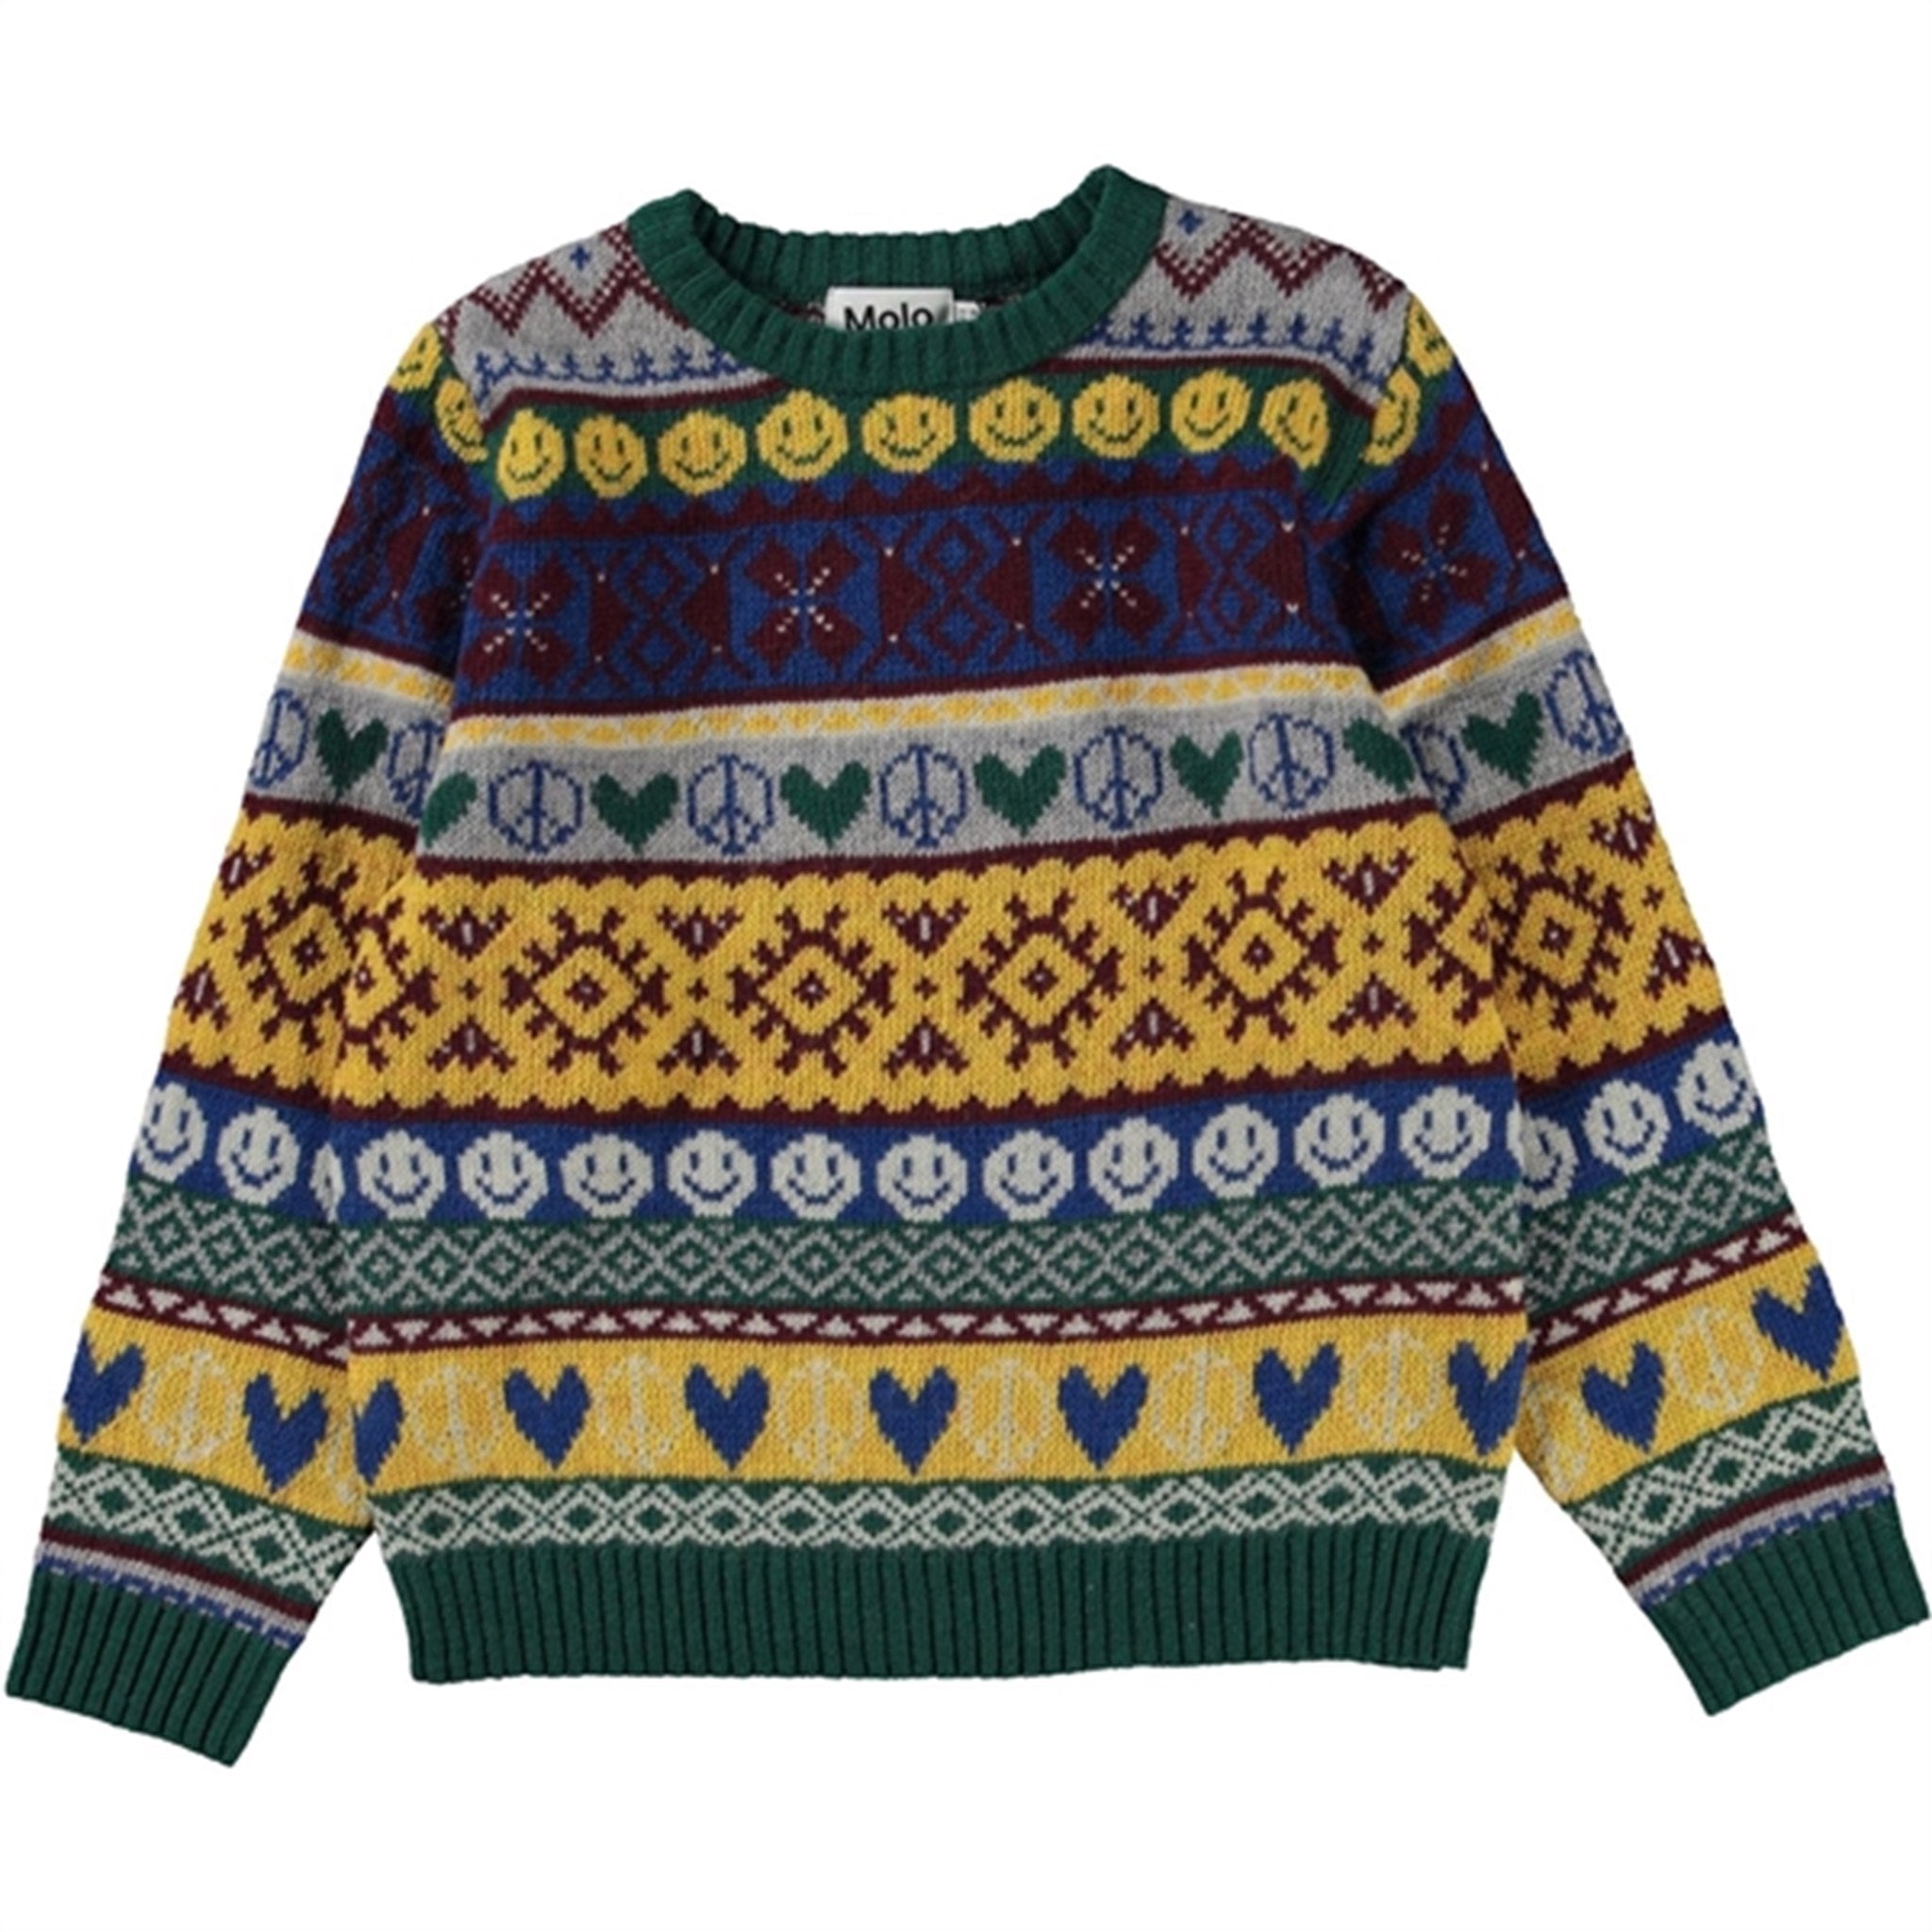 Molo Traditional Barri Sweater